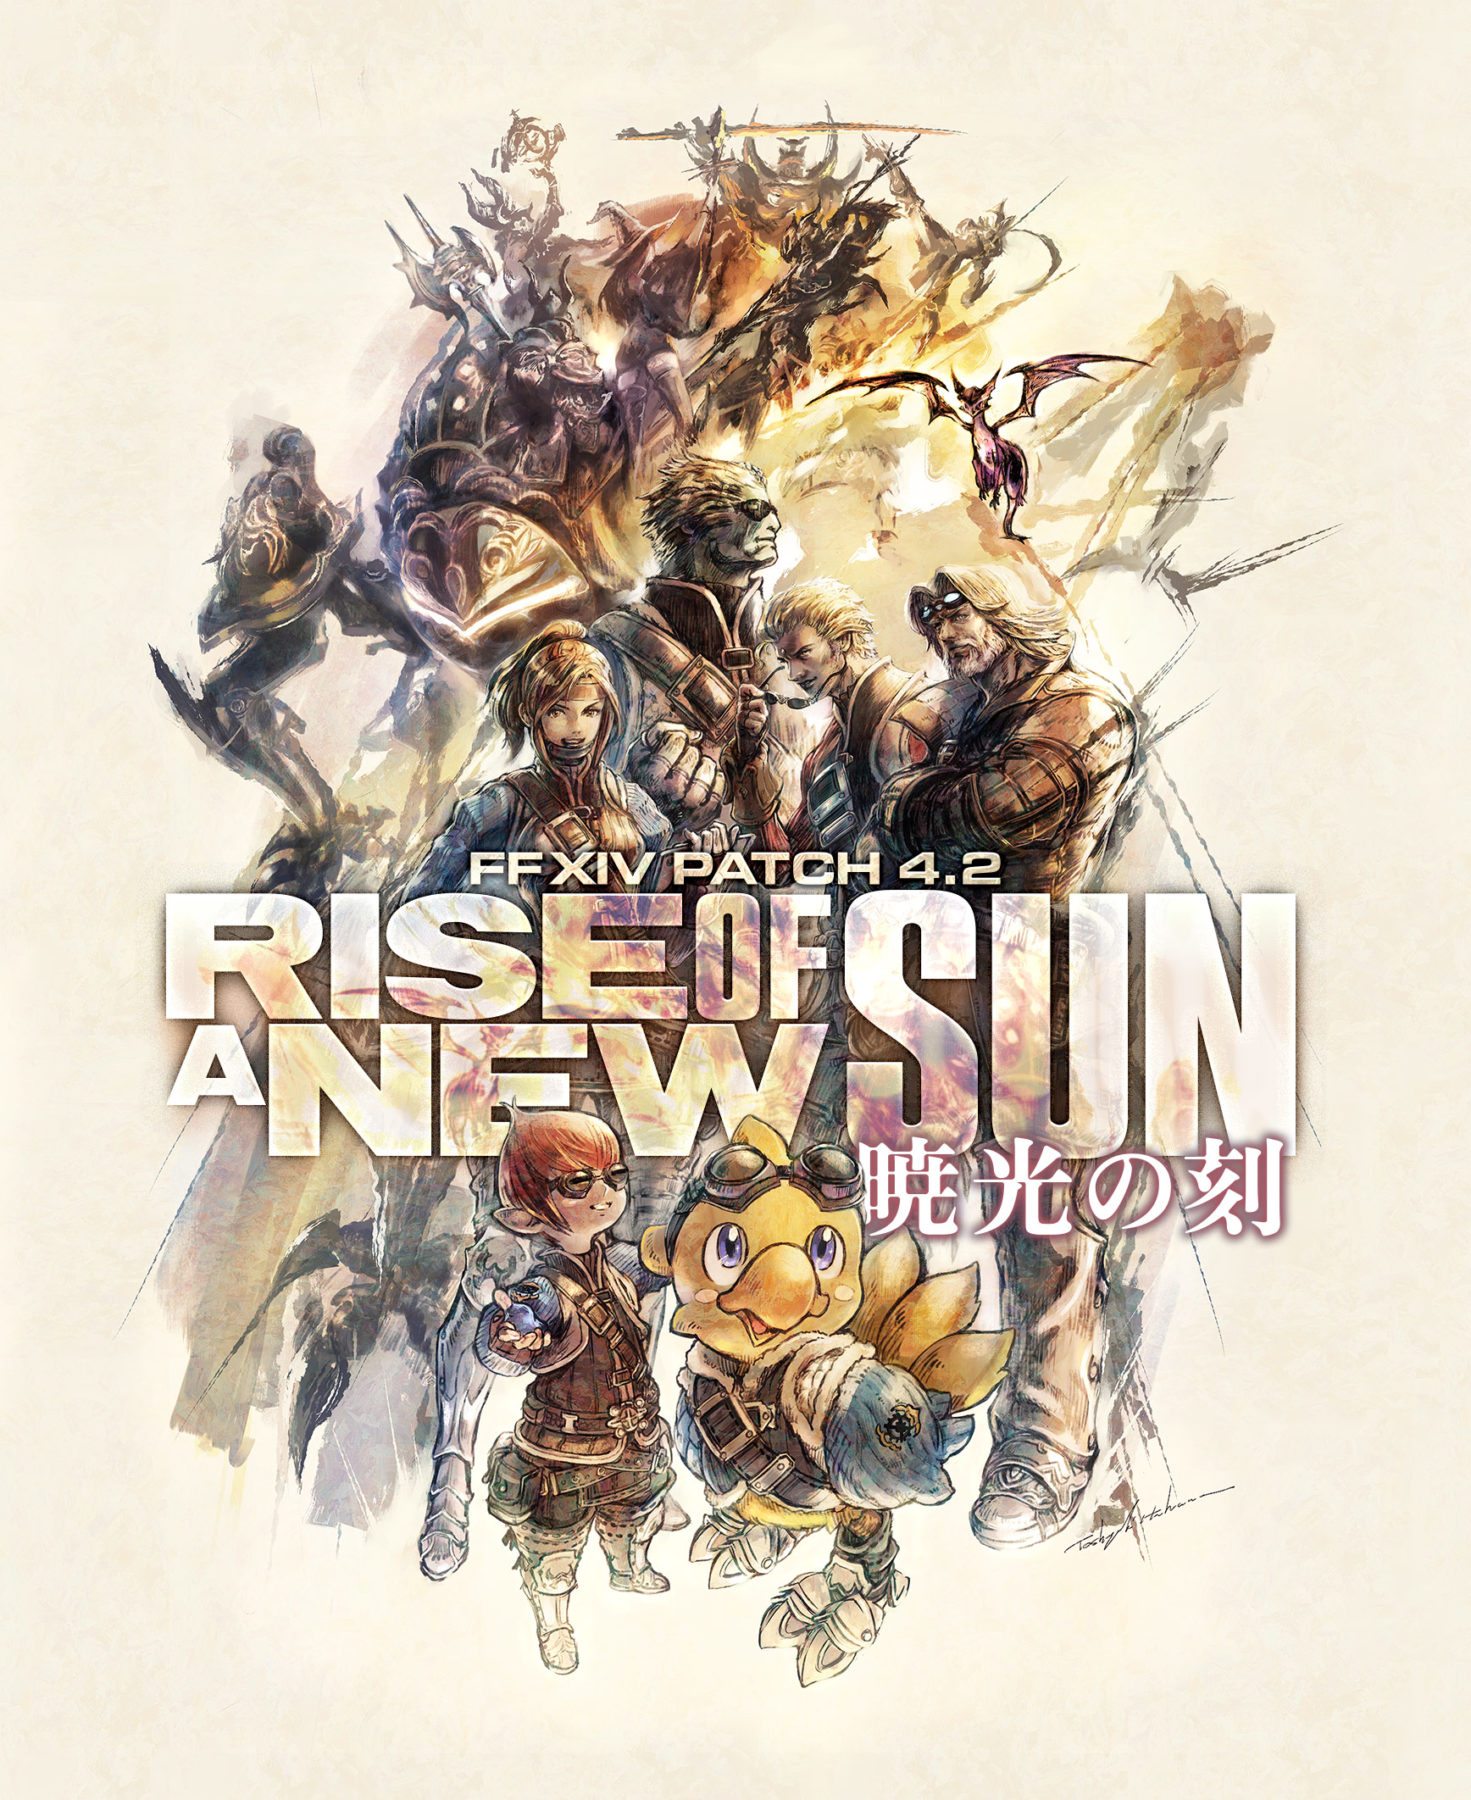 Detalles de Final Fantasy XIV Patch 4.2 Rise of a New Sun y fechas de Fan Fest lanzadas